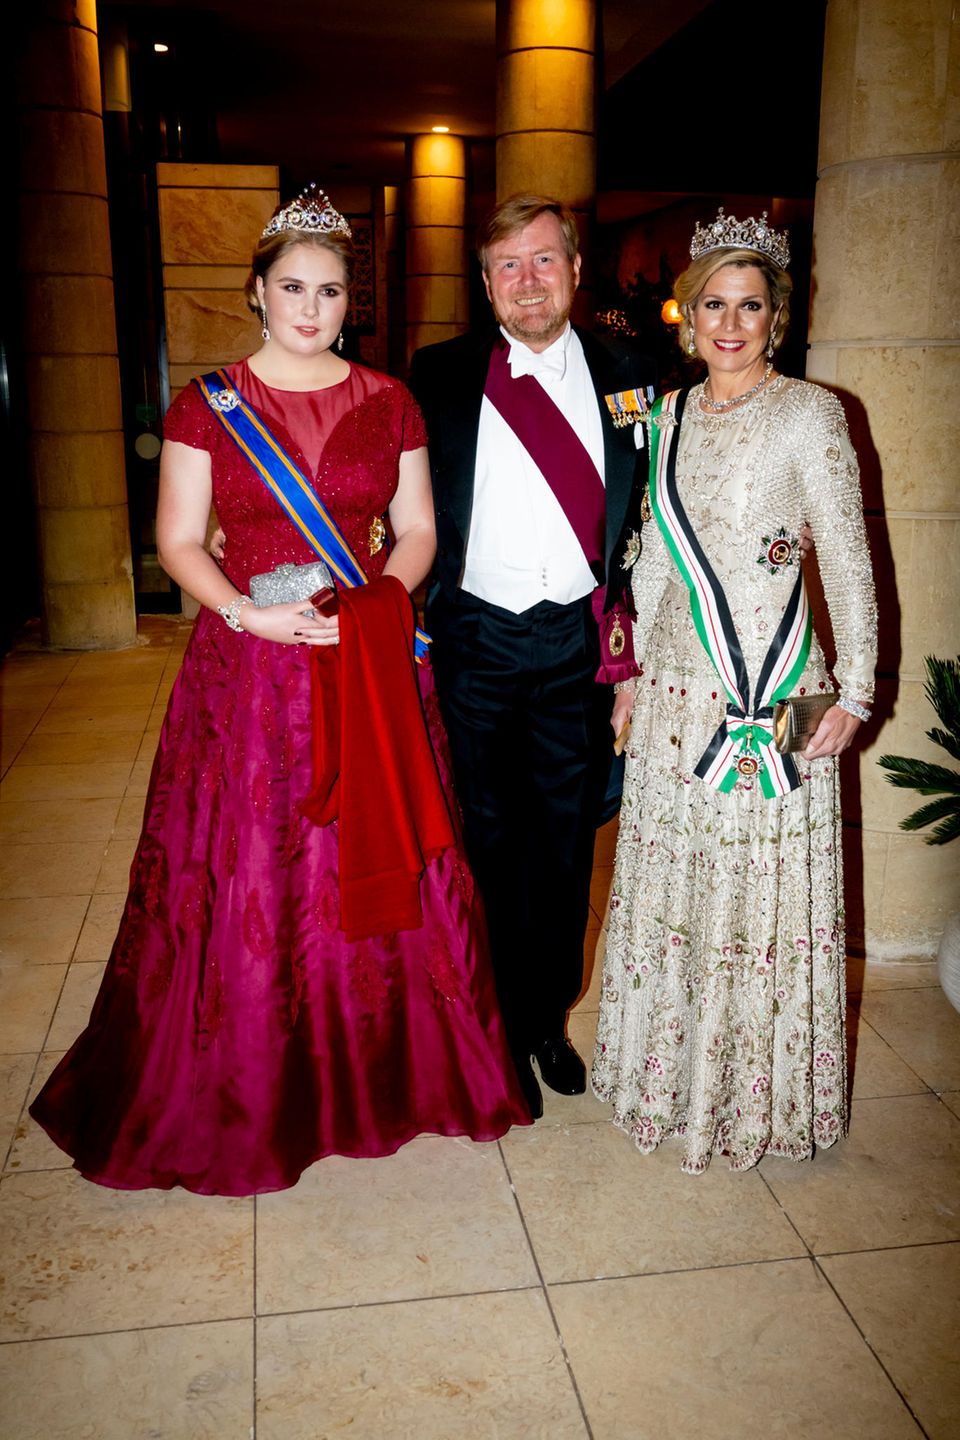 Wie eine zukünftige Königin! Prinzessin Amalia zeigt sich mit der Queen Wilhelmina’s Ruby Peacock Tiara.